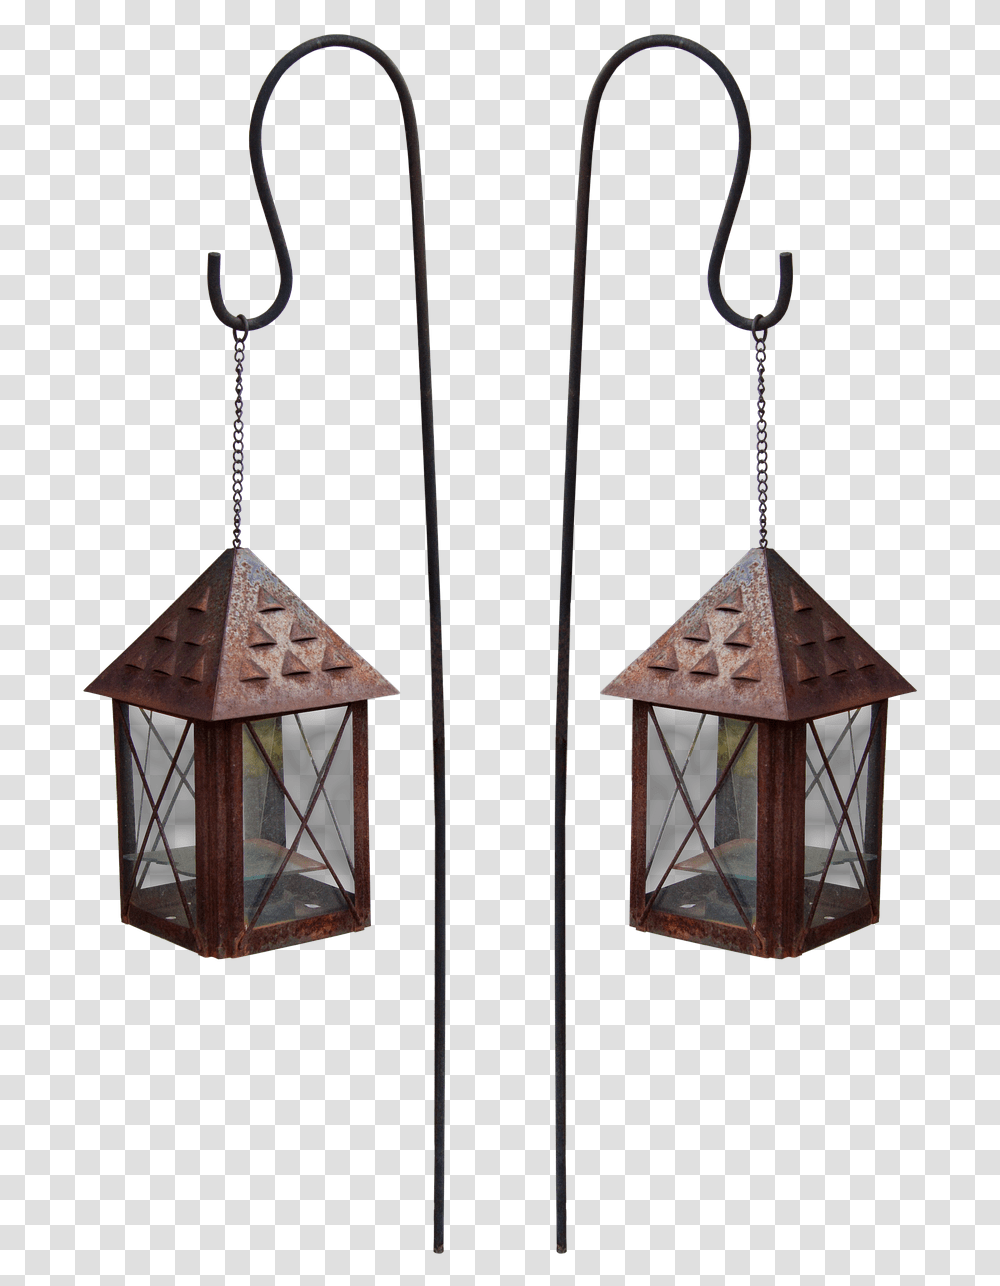 Hang Lantern Light Free Photo, Lamp, Bird Feeder Transparent Png